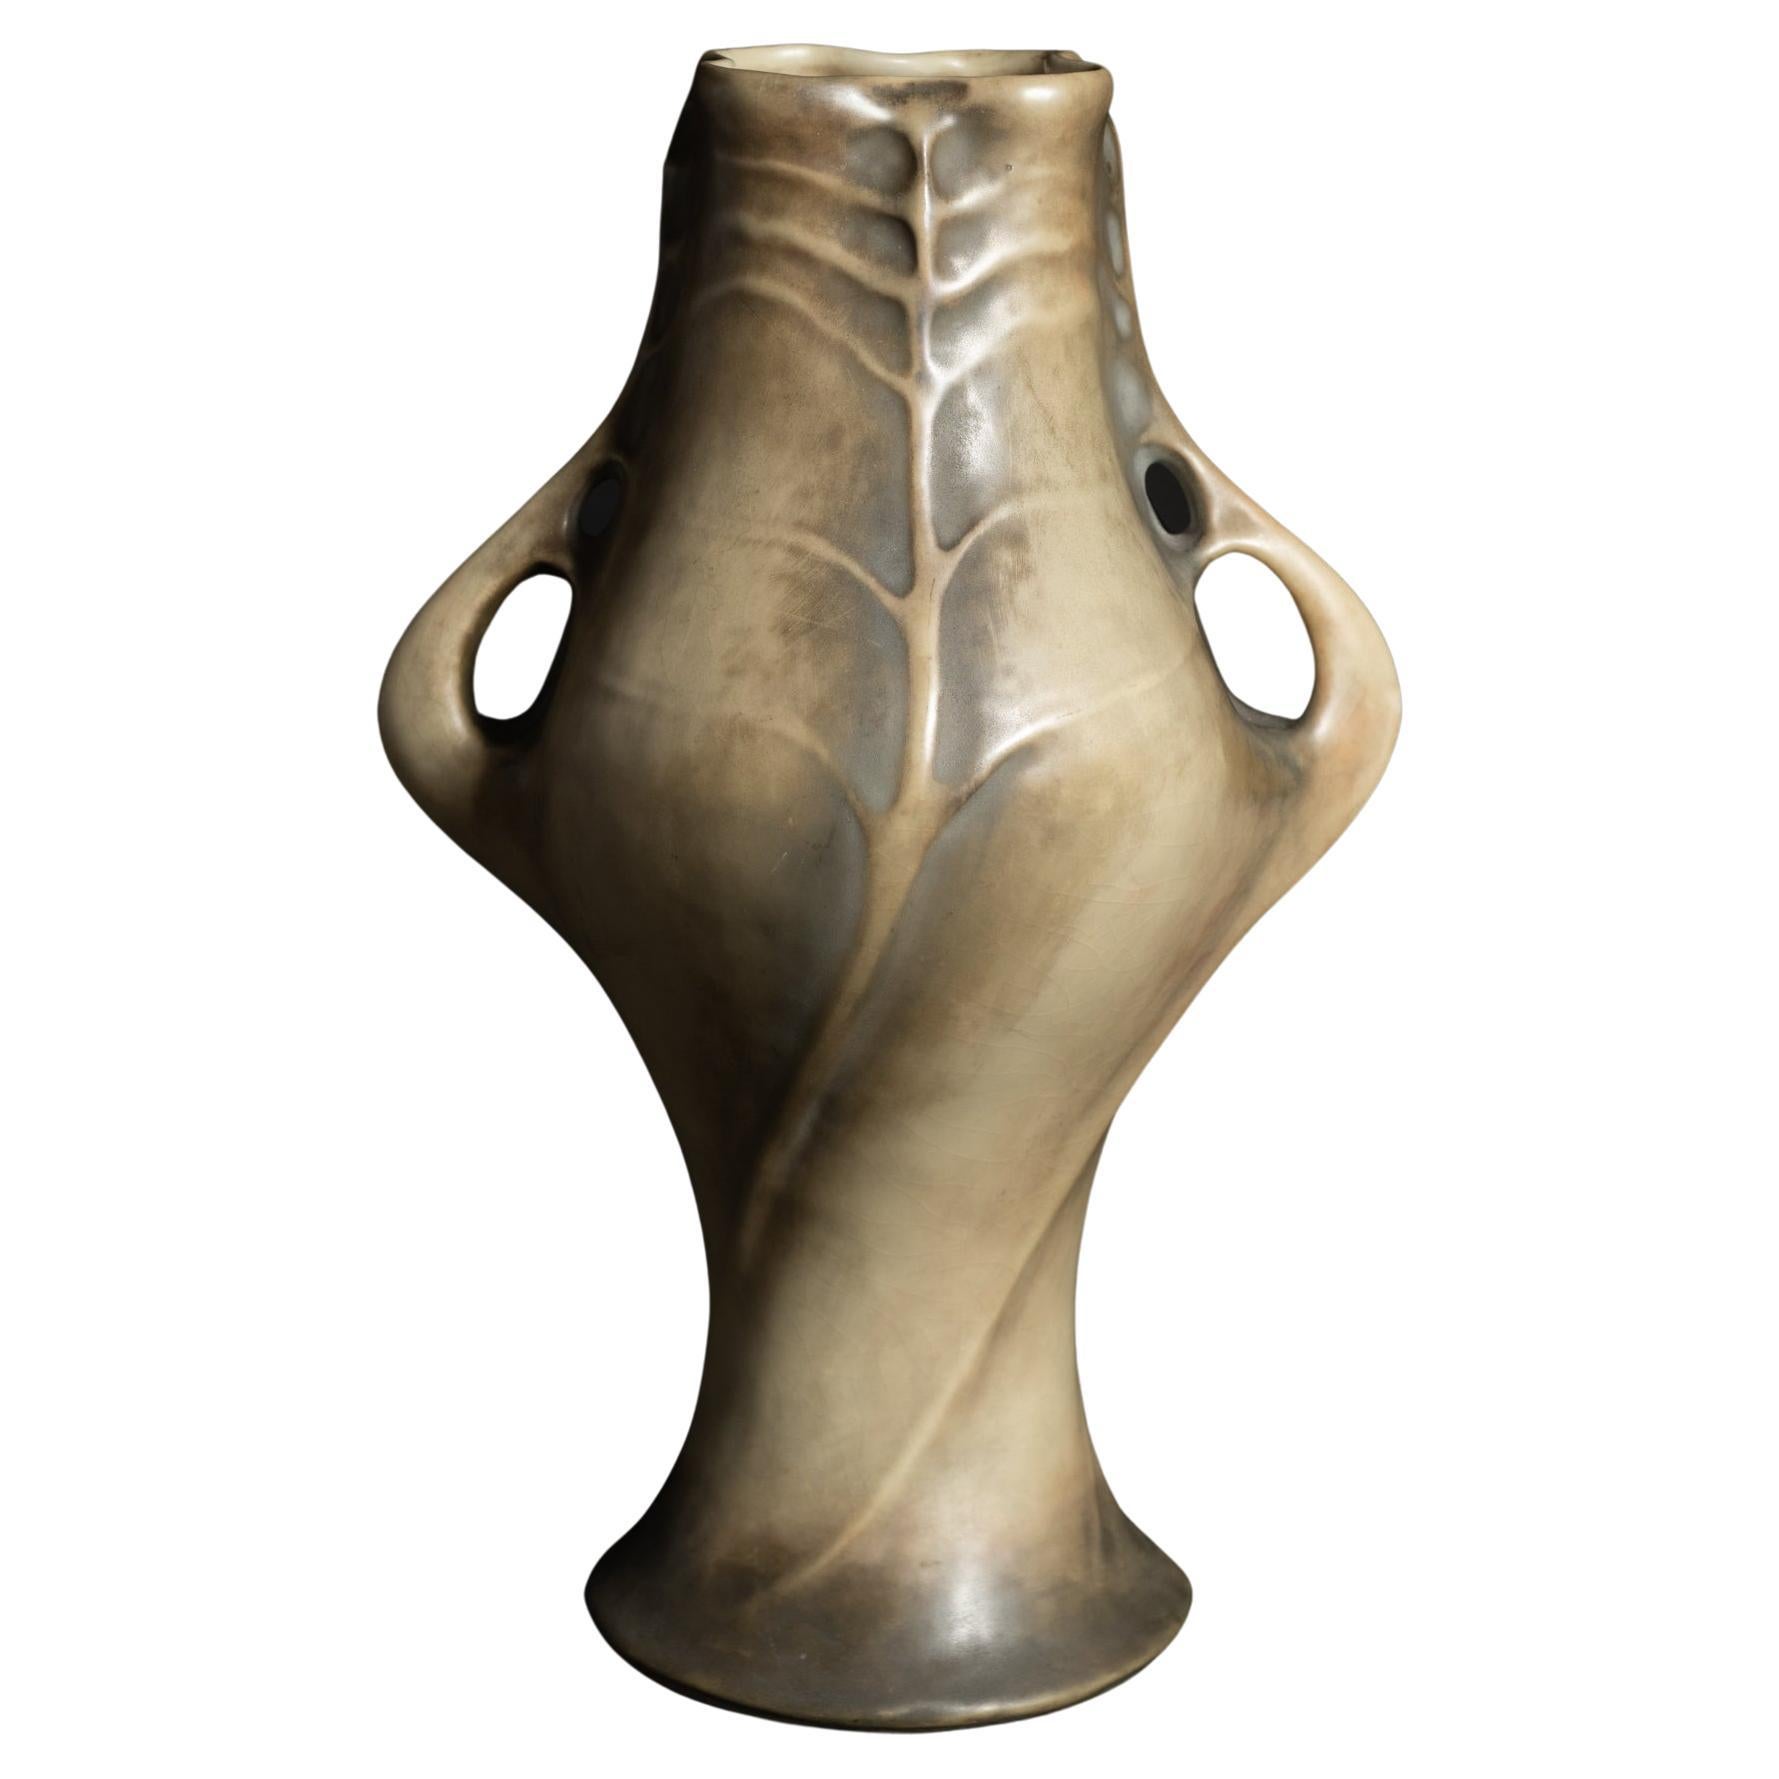 Art Nouveau Spiral Leaf Vase by Paul Dachsel for RStK Amphora